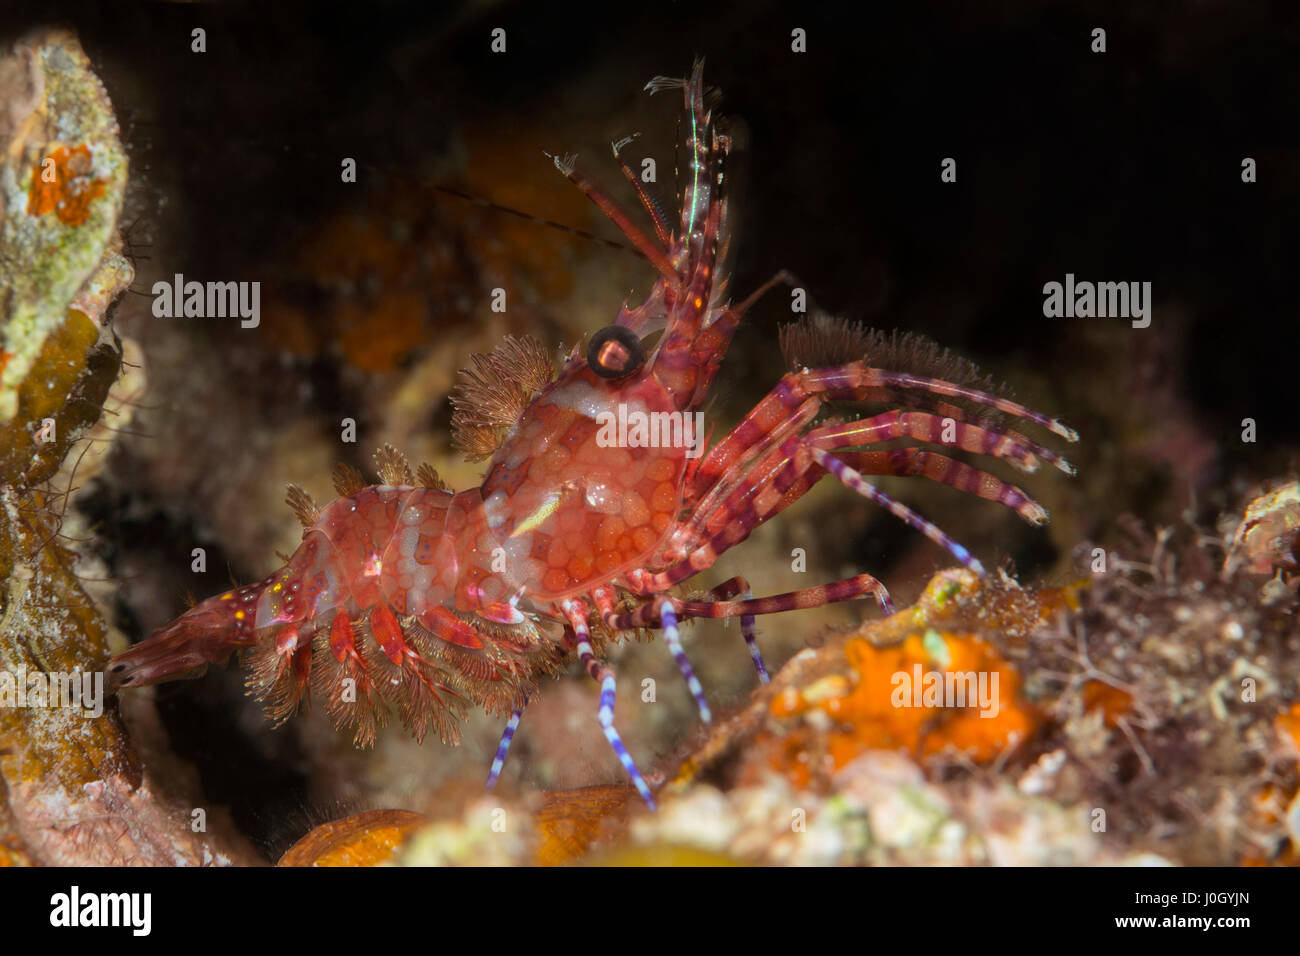 Marbled Shrimp, Saron sp., Cenderawasih Bay, West Papua, Indonesia Stock Photo